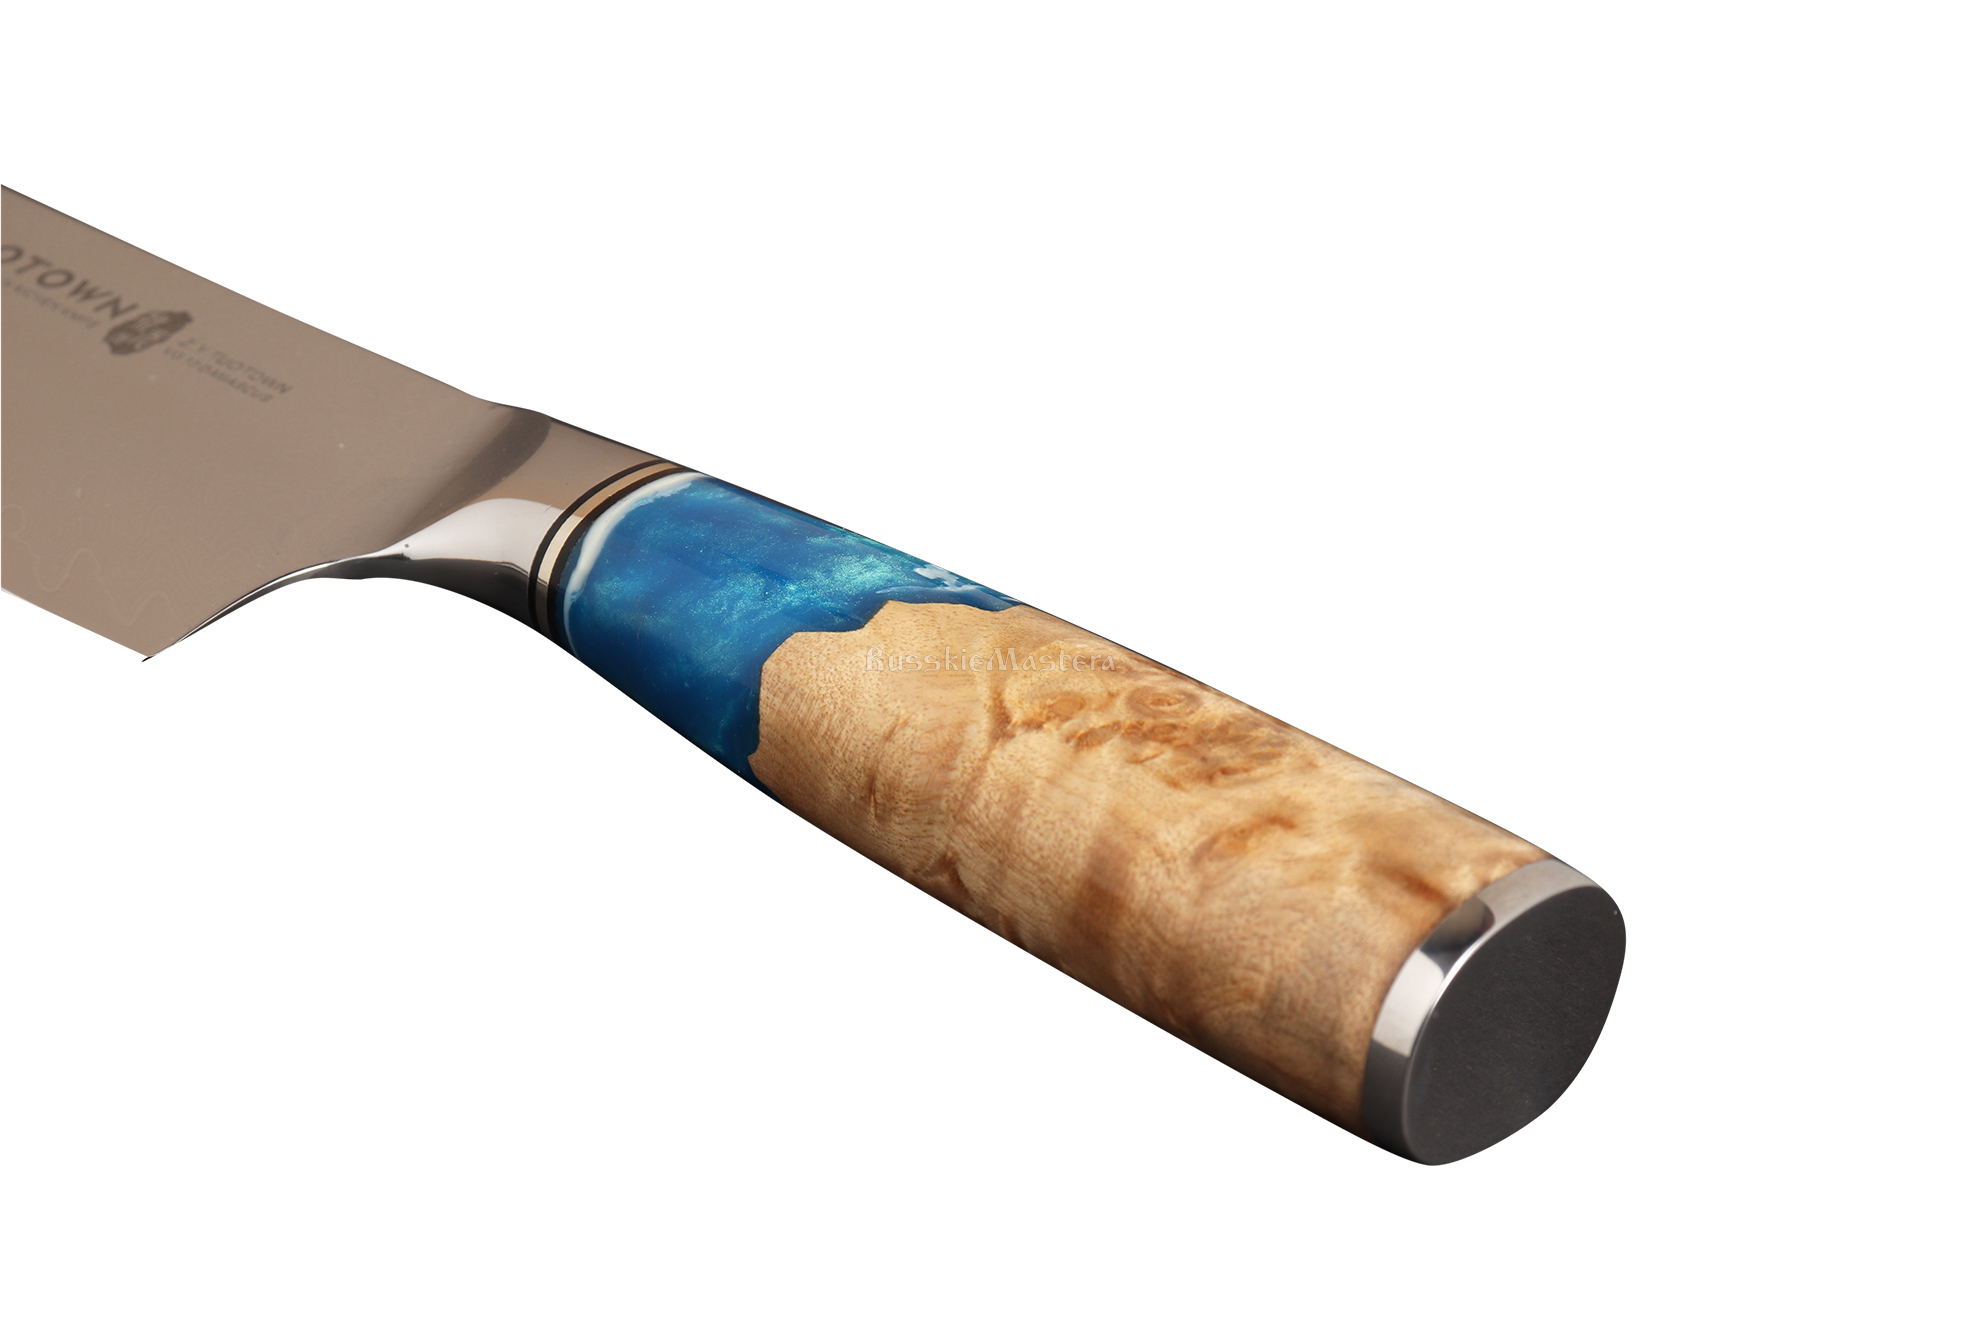 Рукоять из акрилового камня и стабилизированной древесины с больстером и навершием из нержавейки. Серия кухонных ножей TWB-D компании TUOTOWN.